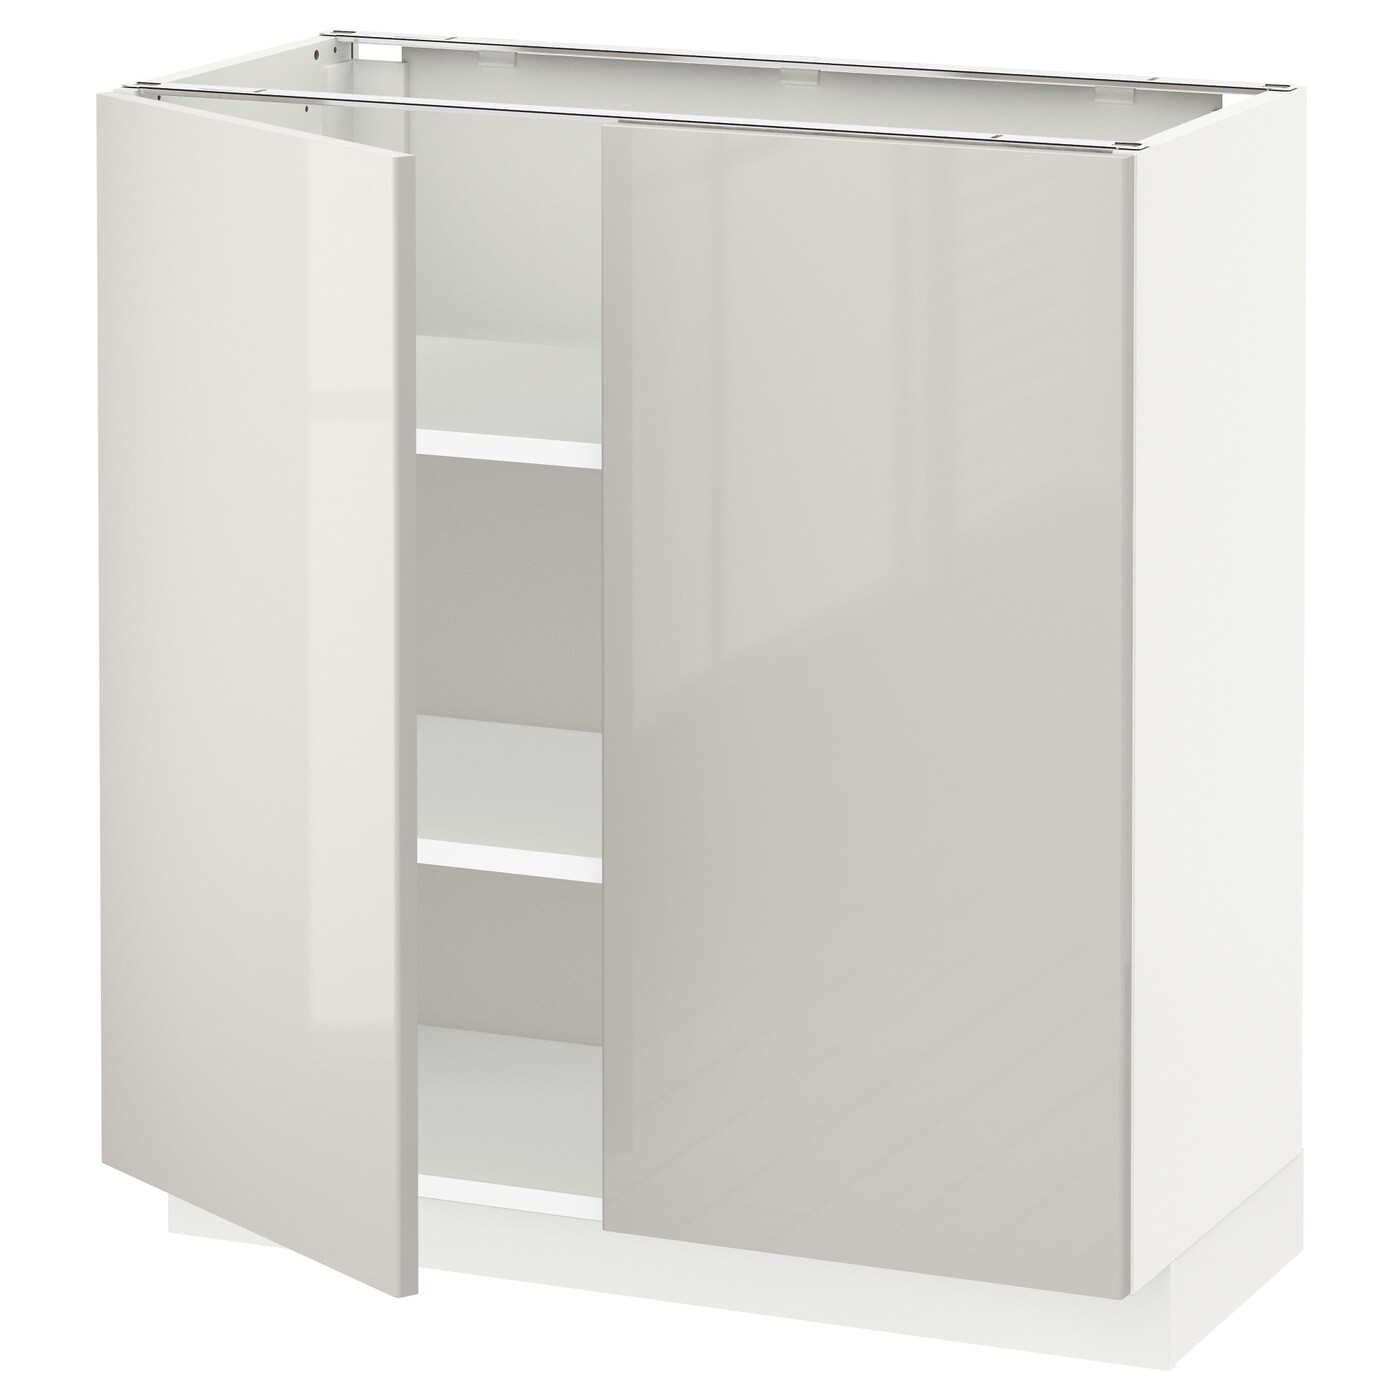 Напольный шкаф - IKEA METOD, 88x39x80см, белый/бежевый, МЕТОД ИКЕА